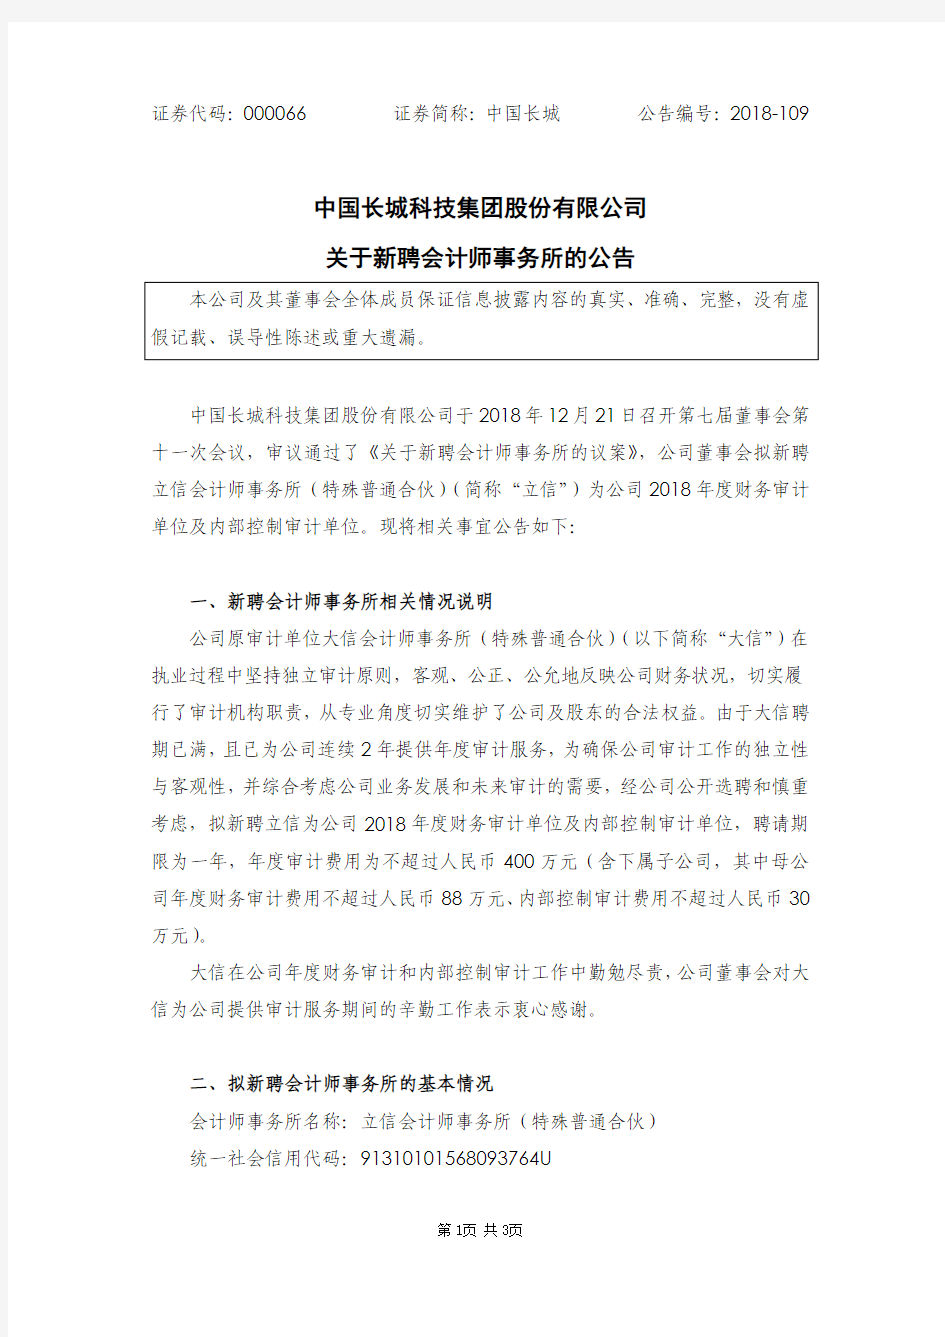 中国长城科技集团股份有限公司关于新聘会计师事务所的公告